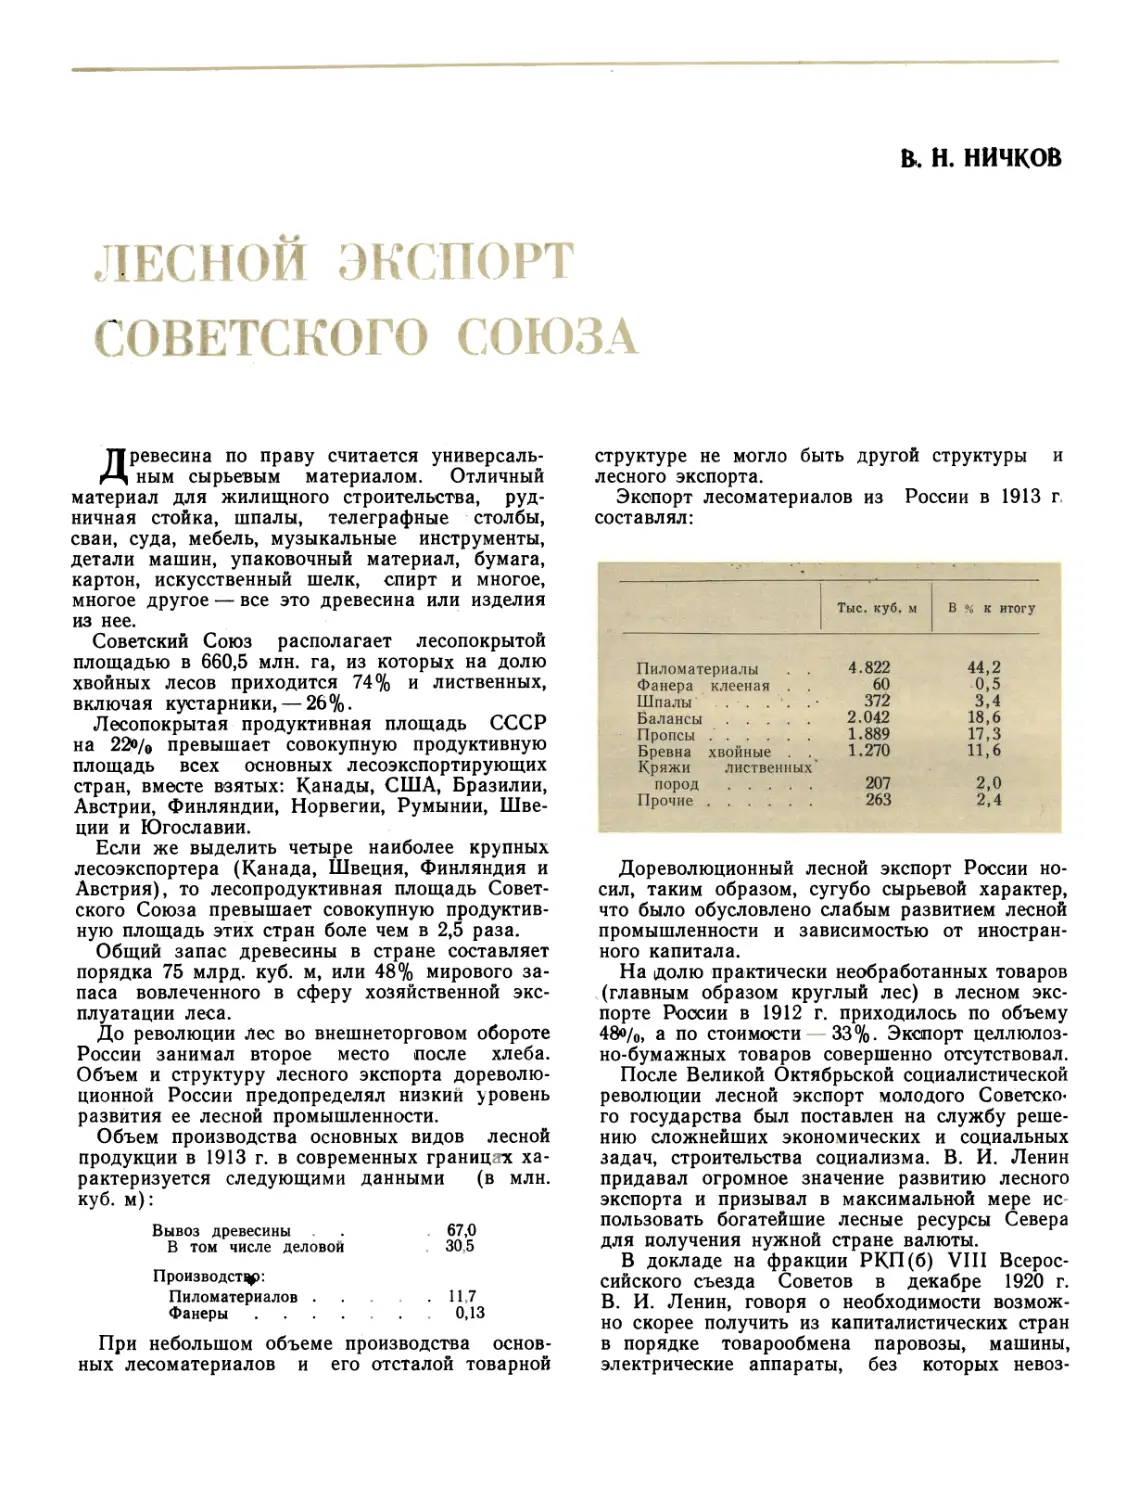 Доктор эк. наук В. Н. НИЧКОВ Лесной экспорт Советского Союза